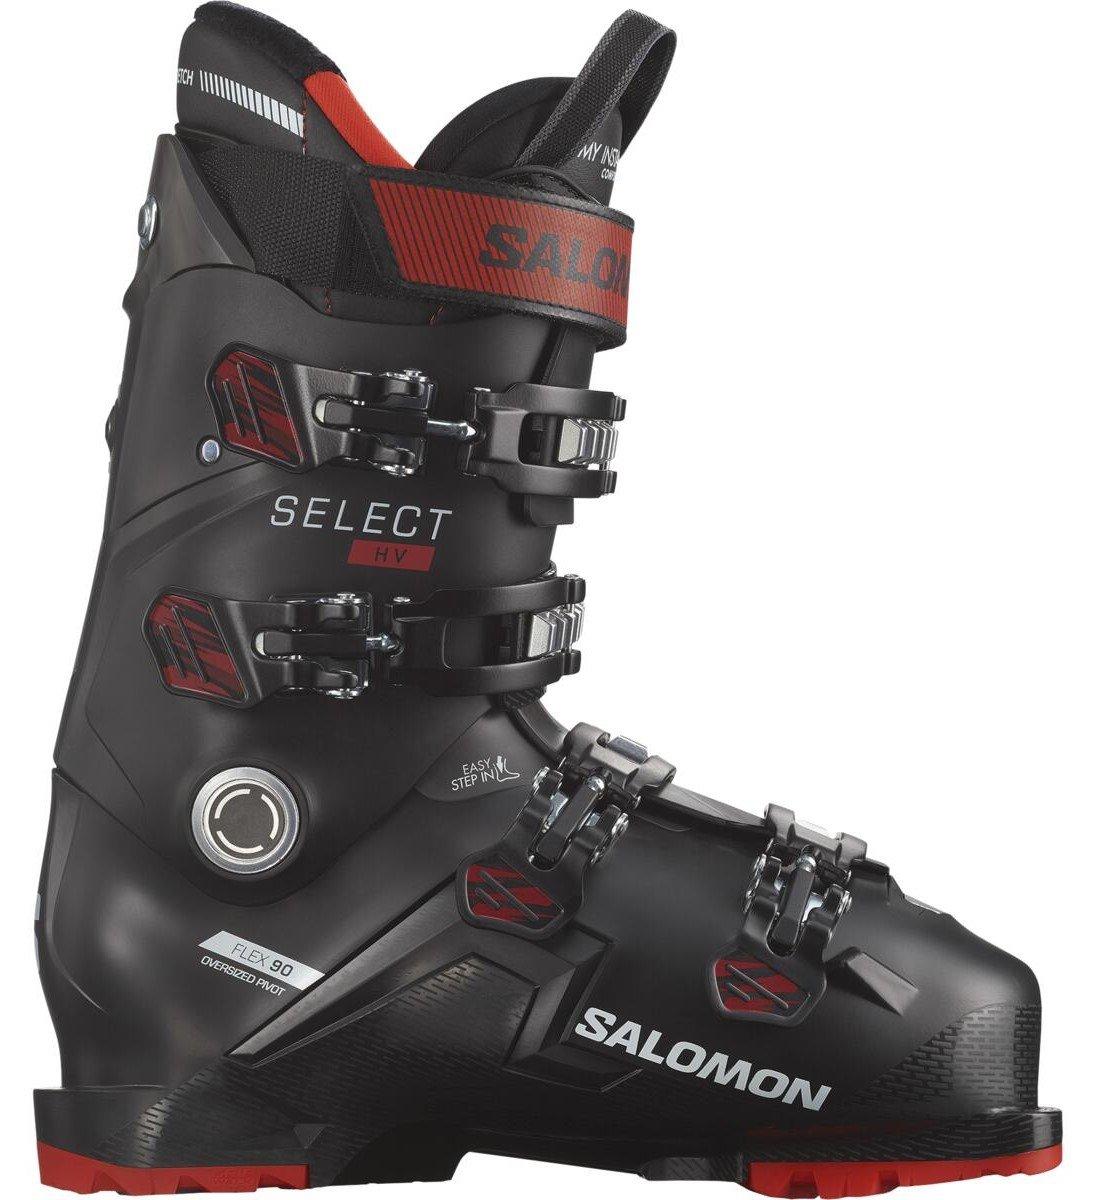 Pánske lyžiarky Salomon Select HV 90 Veľkosť: 29 cm